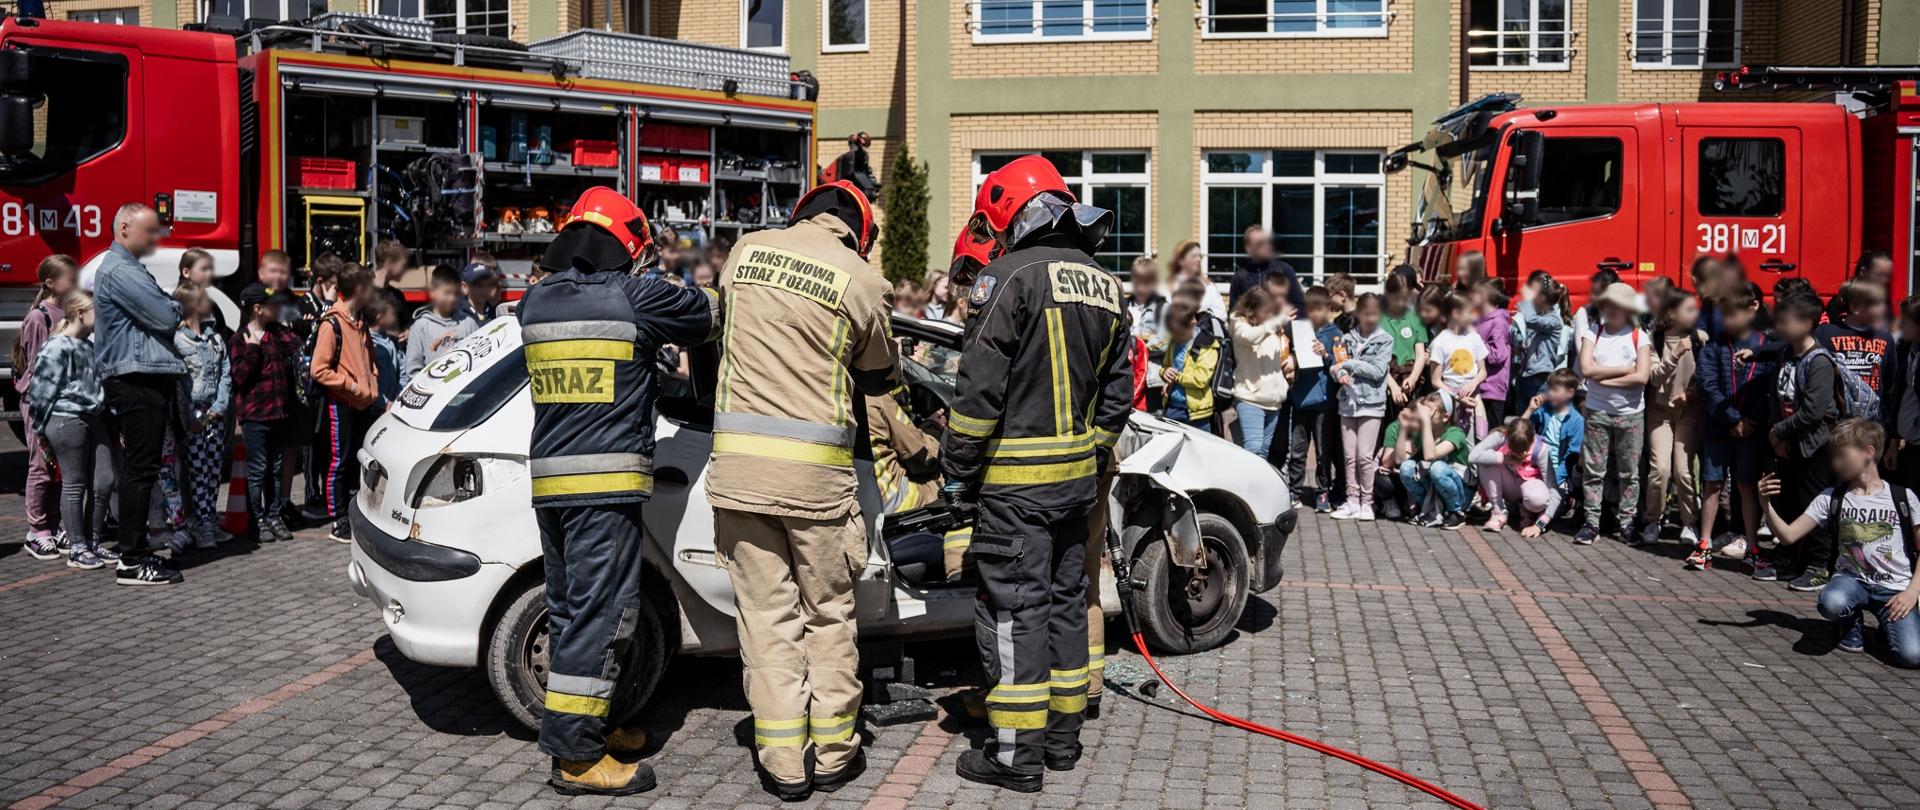 Zdjęcie przedstawia czterech strażaków, ubranych w ubrania specjalne i czerwone hełmy, którzy sprzętem hydraulicznym wykonują dostęp do osoby poszkodowanej, znajdującej się we wraku samochodu. W tle zdjęcia grupa dzieci obserwujących pokaz, na tle dwóch samochodów pożarniczych. 